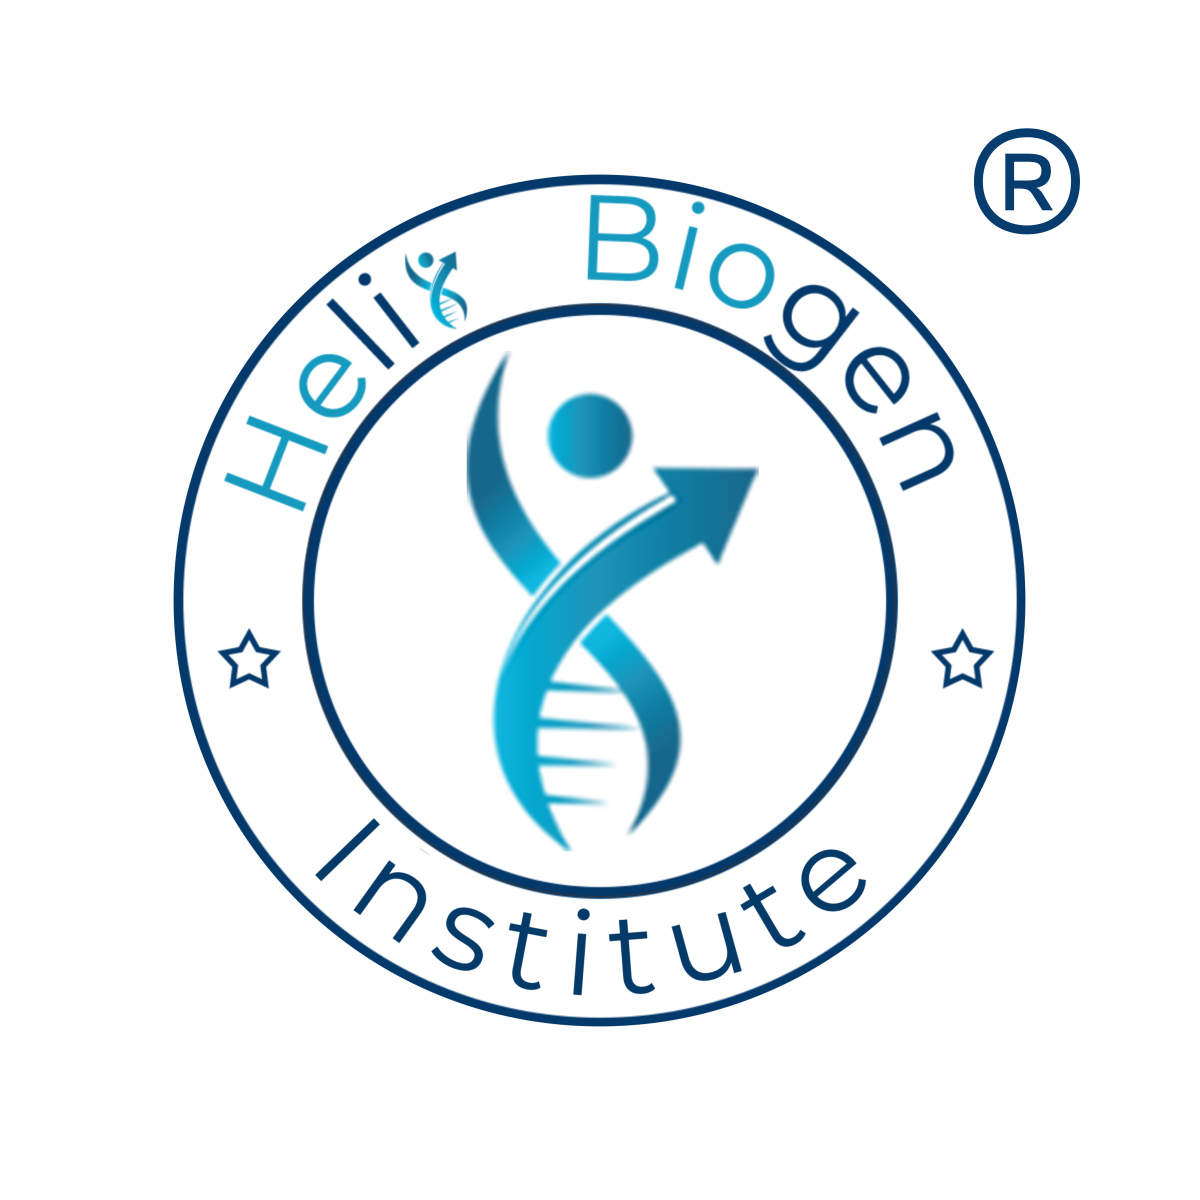 Helix Biogen Institute